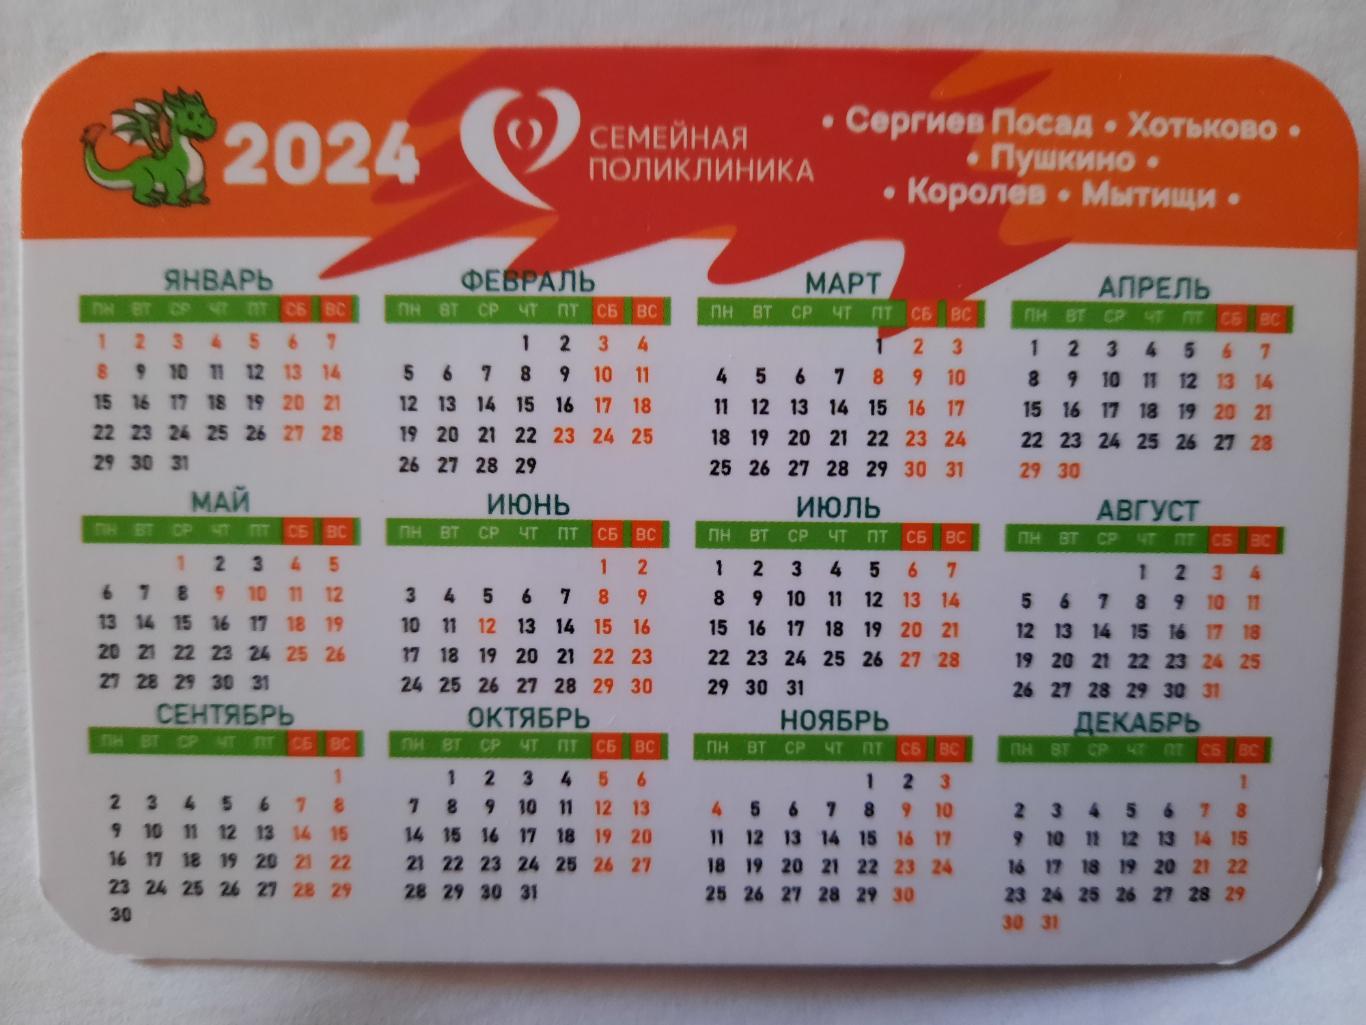 Календарик карманный. Семейная поликлиника 2024г. 1